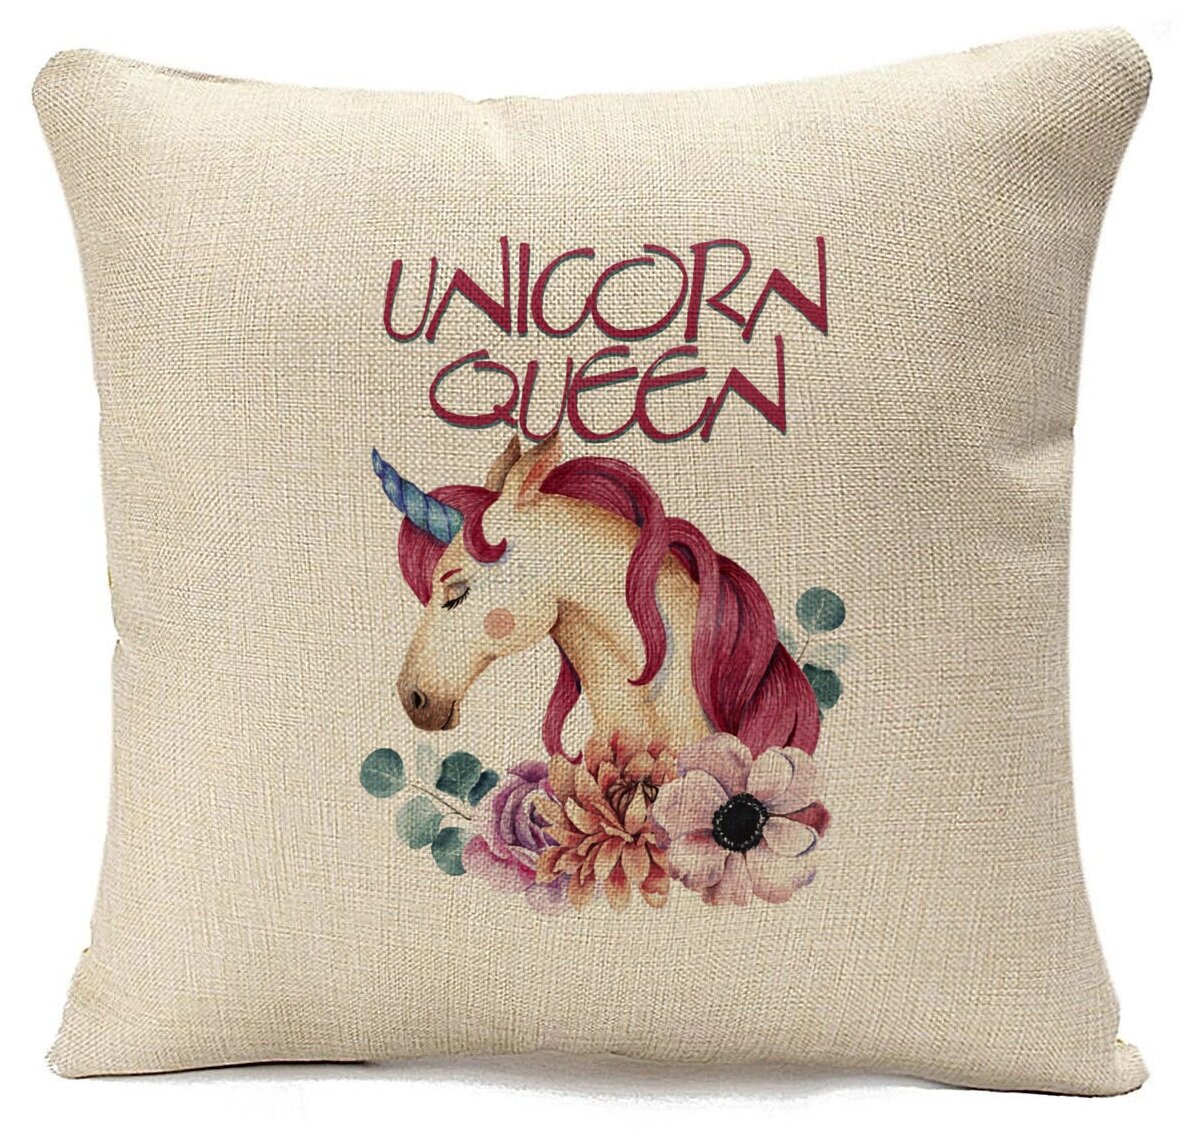 Подушка CoolPodarok Unicorn queen